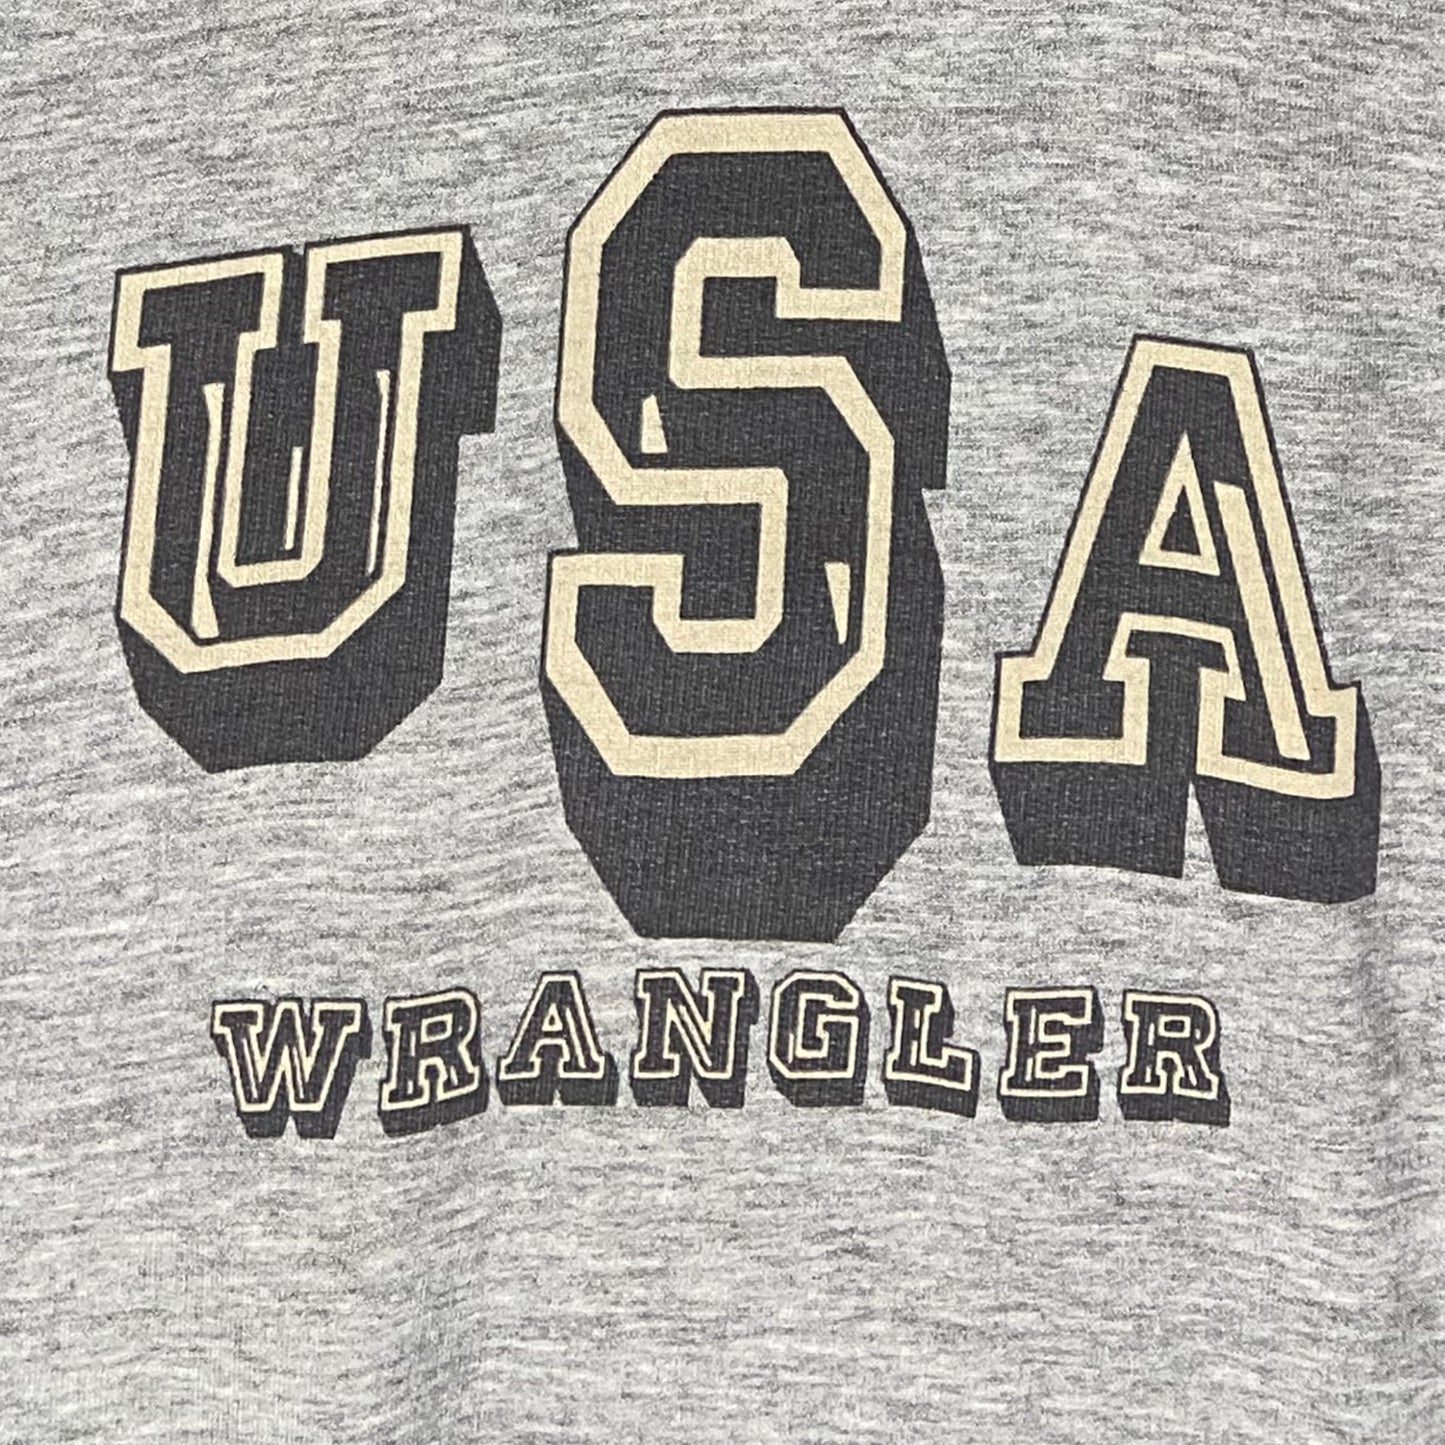 Vintage Wrangler hoodie - L